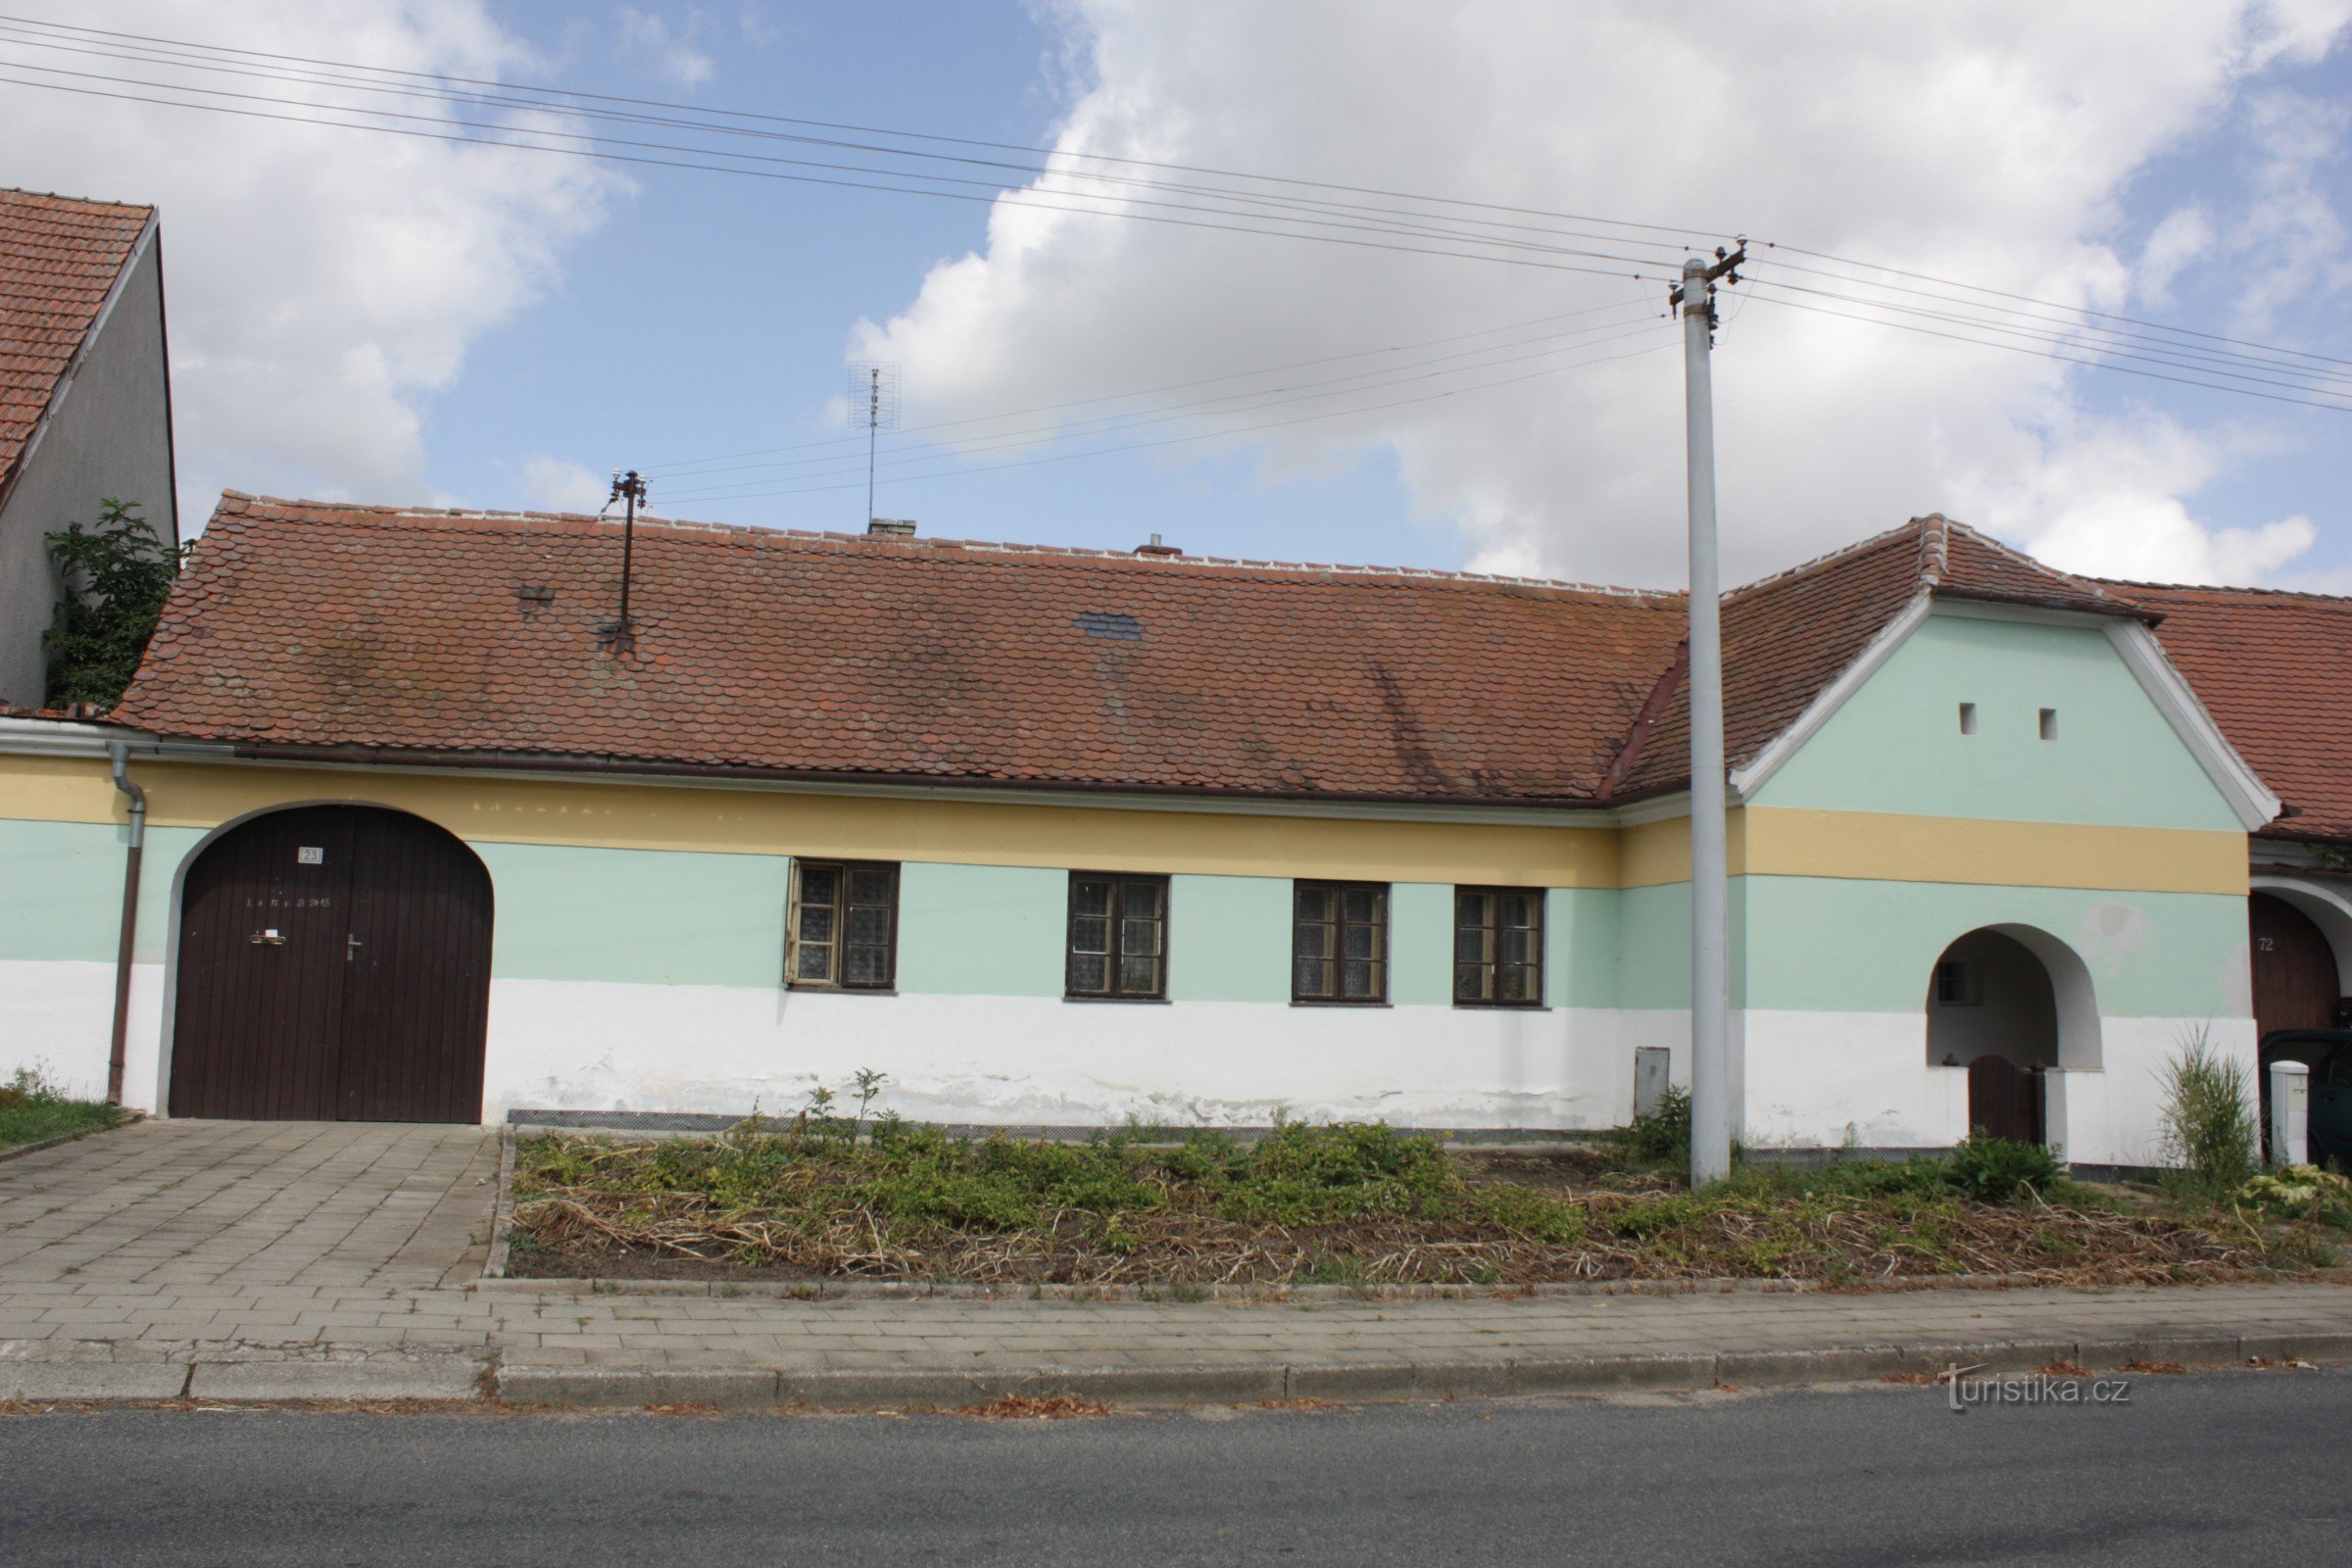 Gramozna hiša št. 23 v Lysovicah